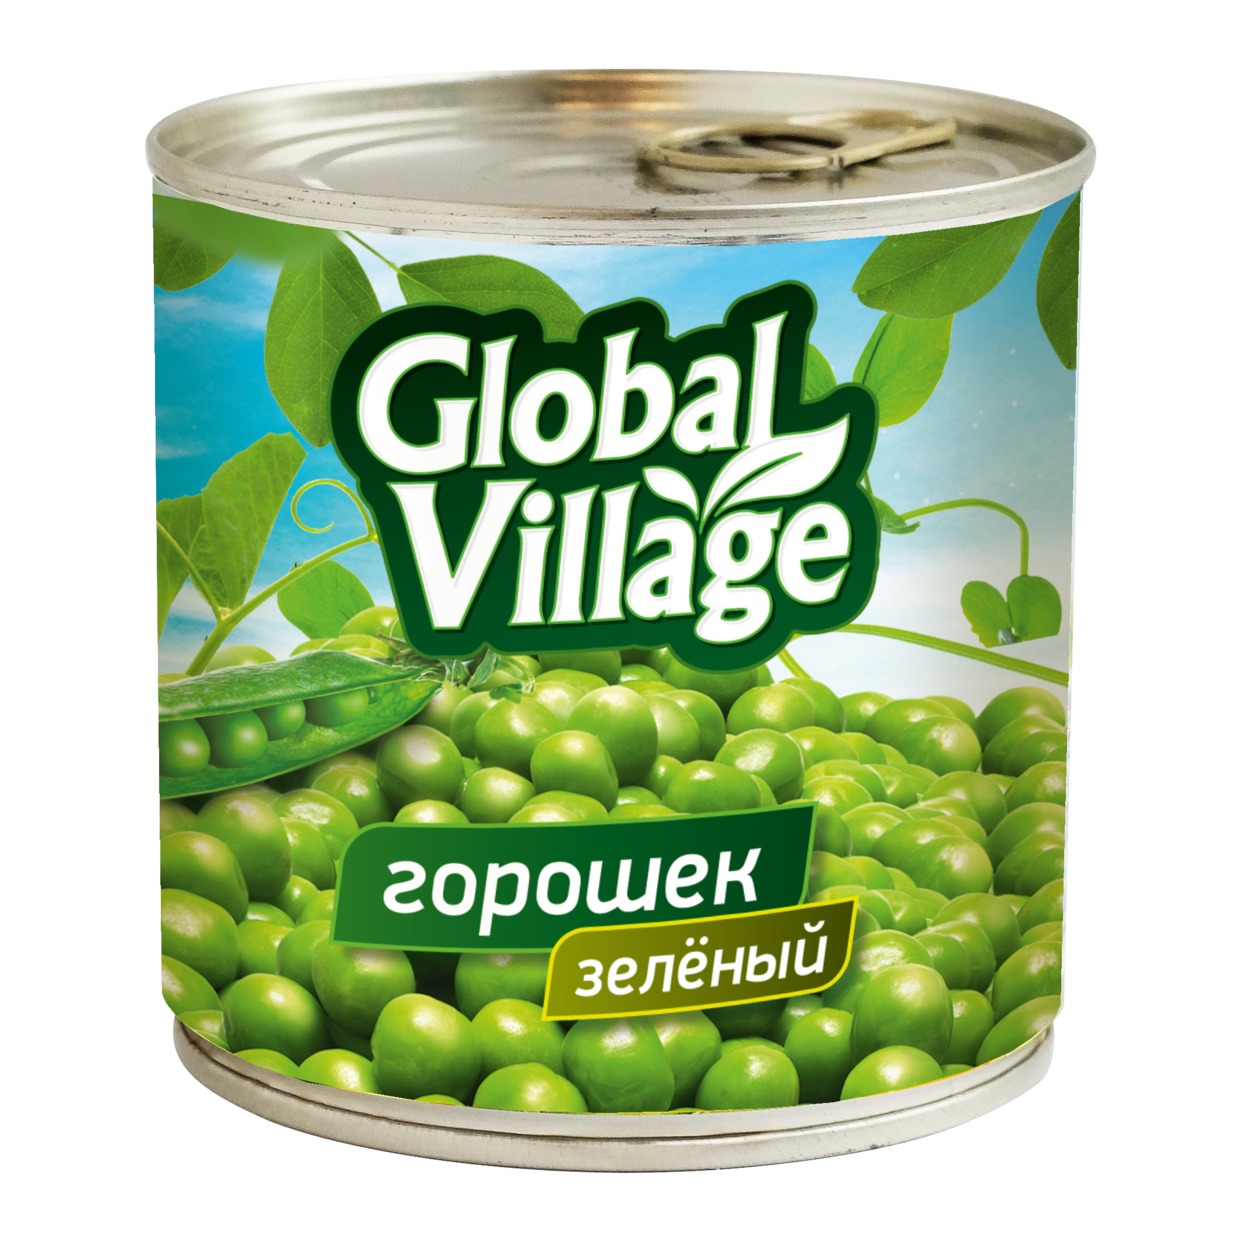 Горошек Global Village зеленый из мозговых сортов 400 г по акции в Пятерочке